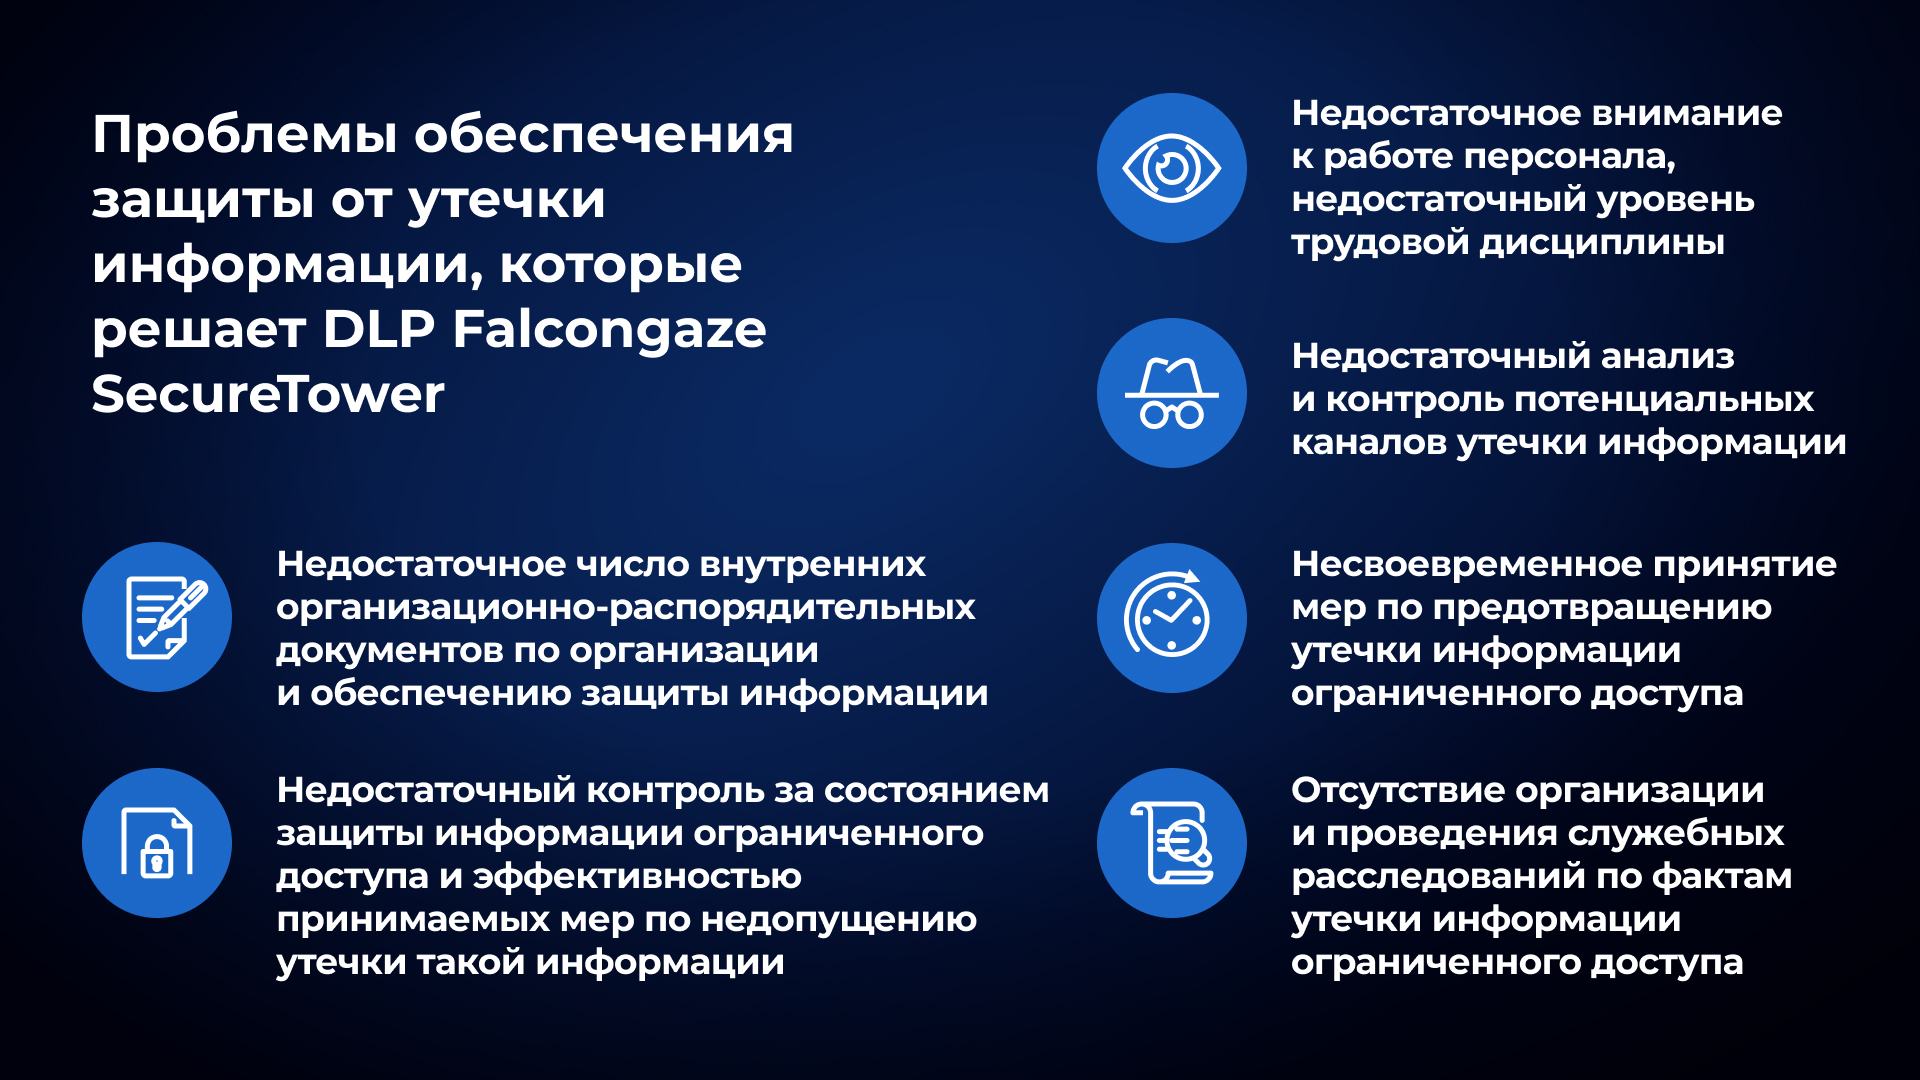 Проблемы обеспечения защиты от утечки информации, которые решает DLP Falcongaze SecureTower